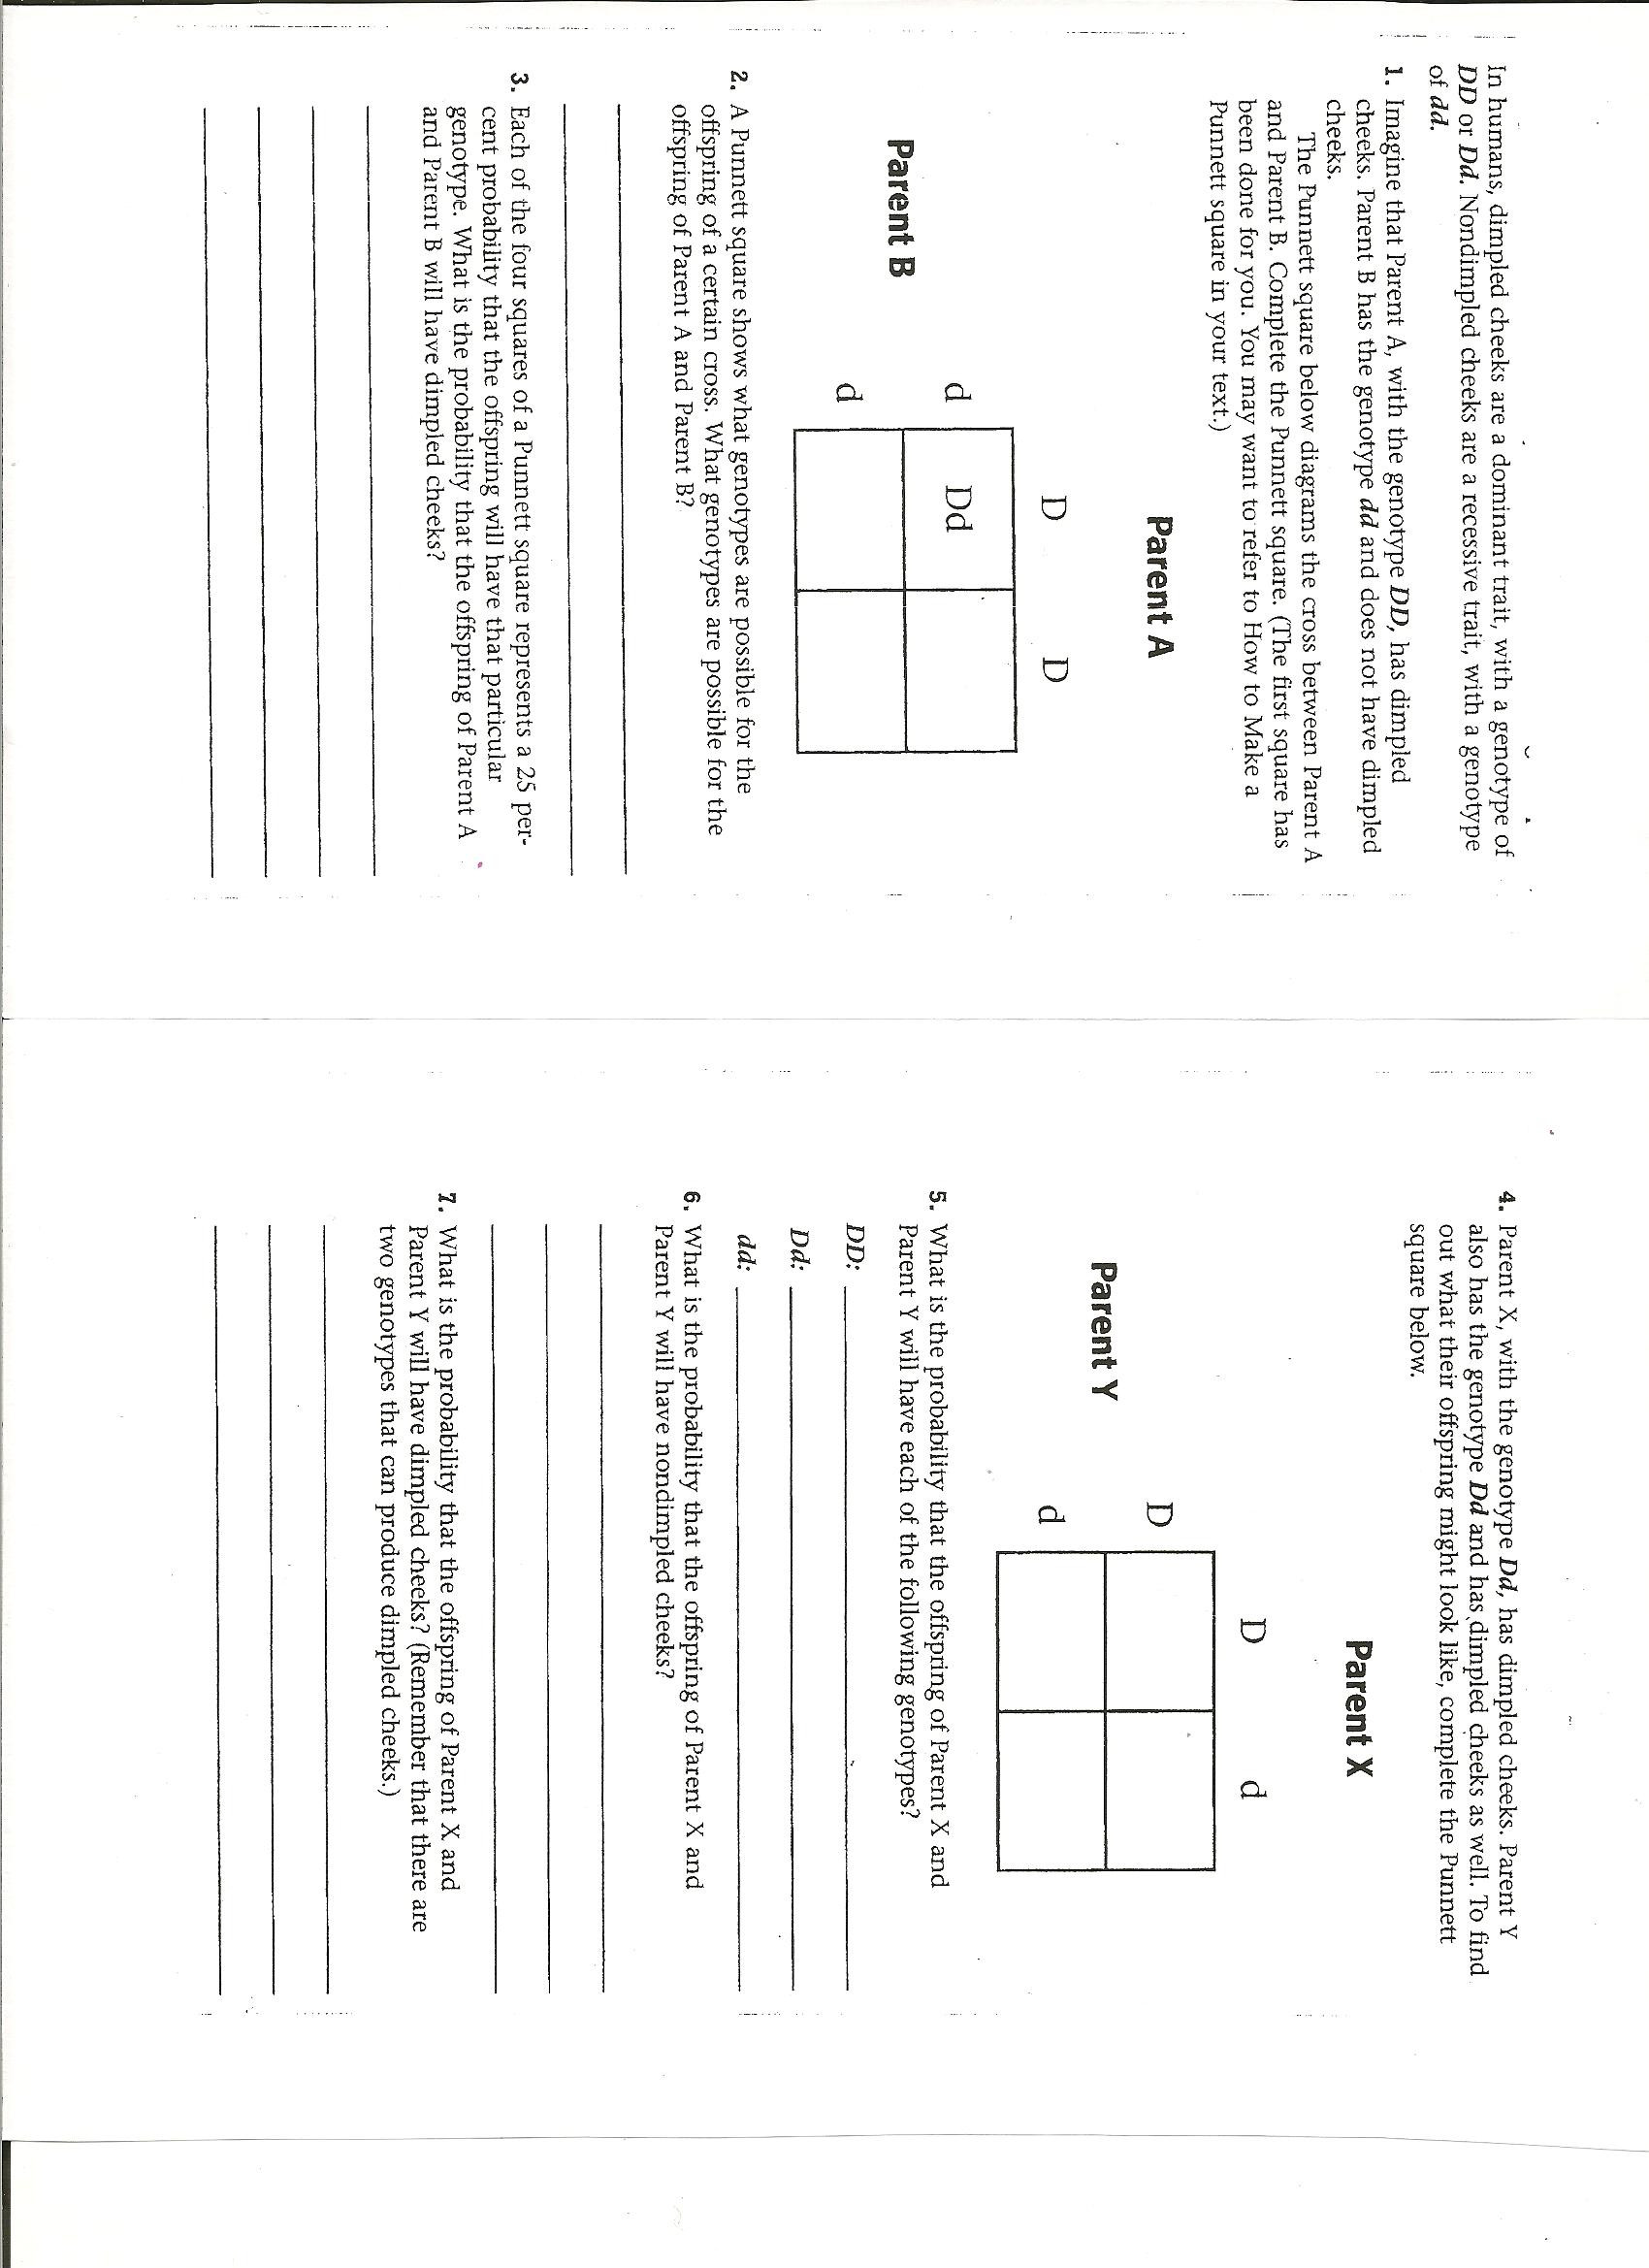 Punnett Square Practice Worksheet Answers Worksheet Punnett Square Practice Worksheet Hunterhq Free